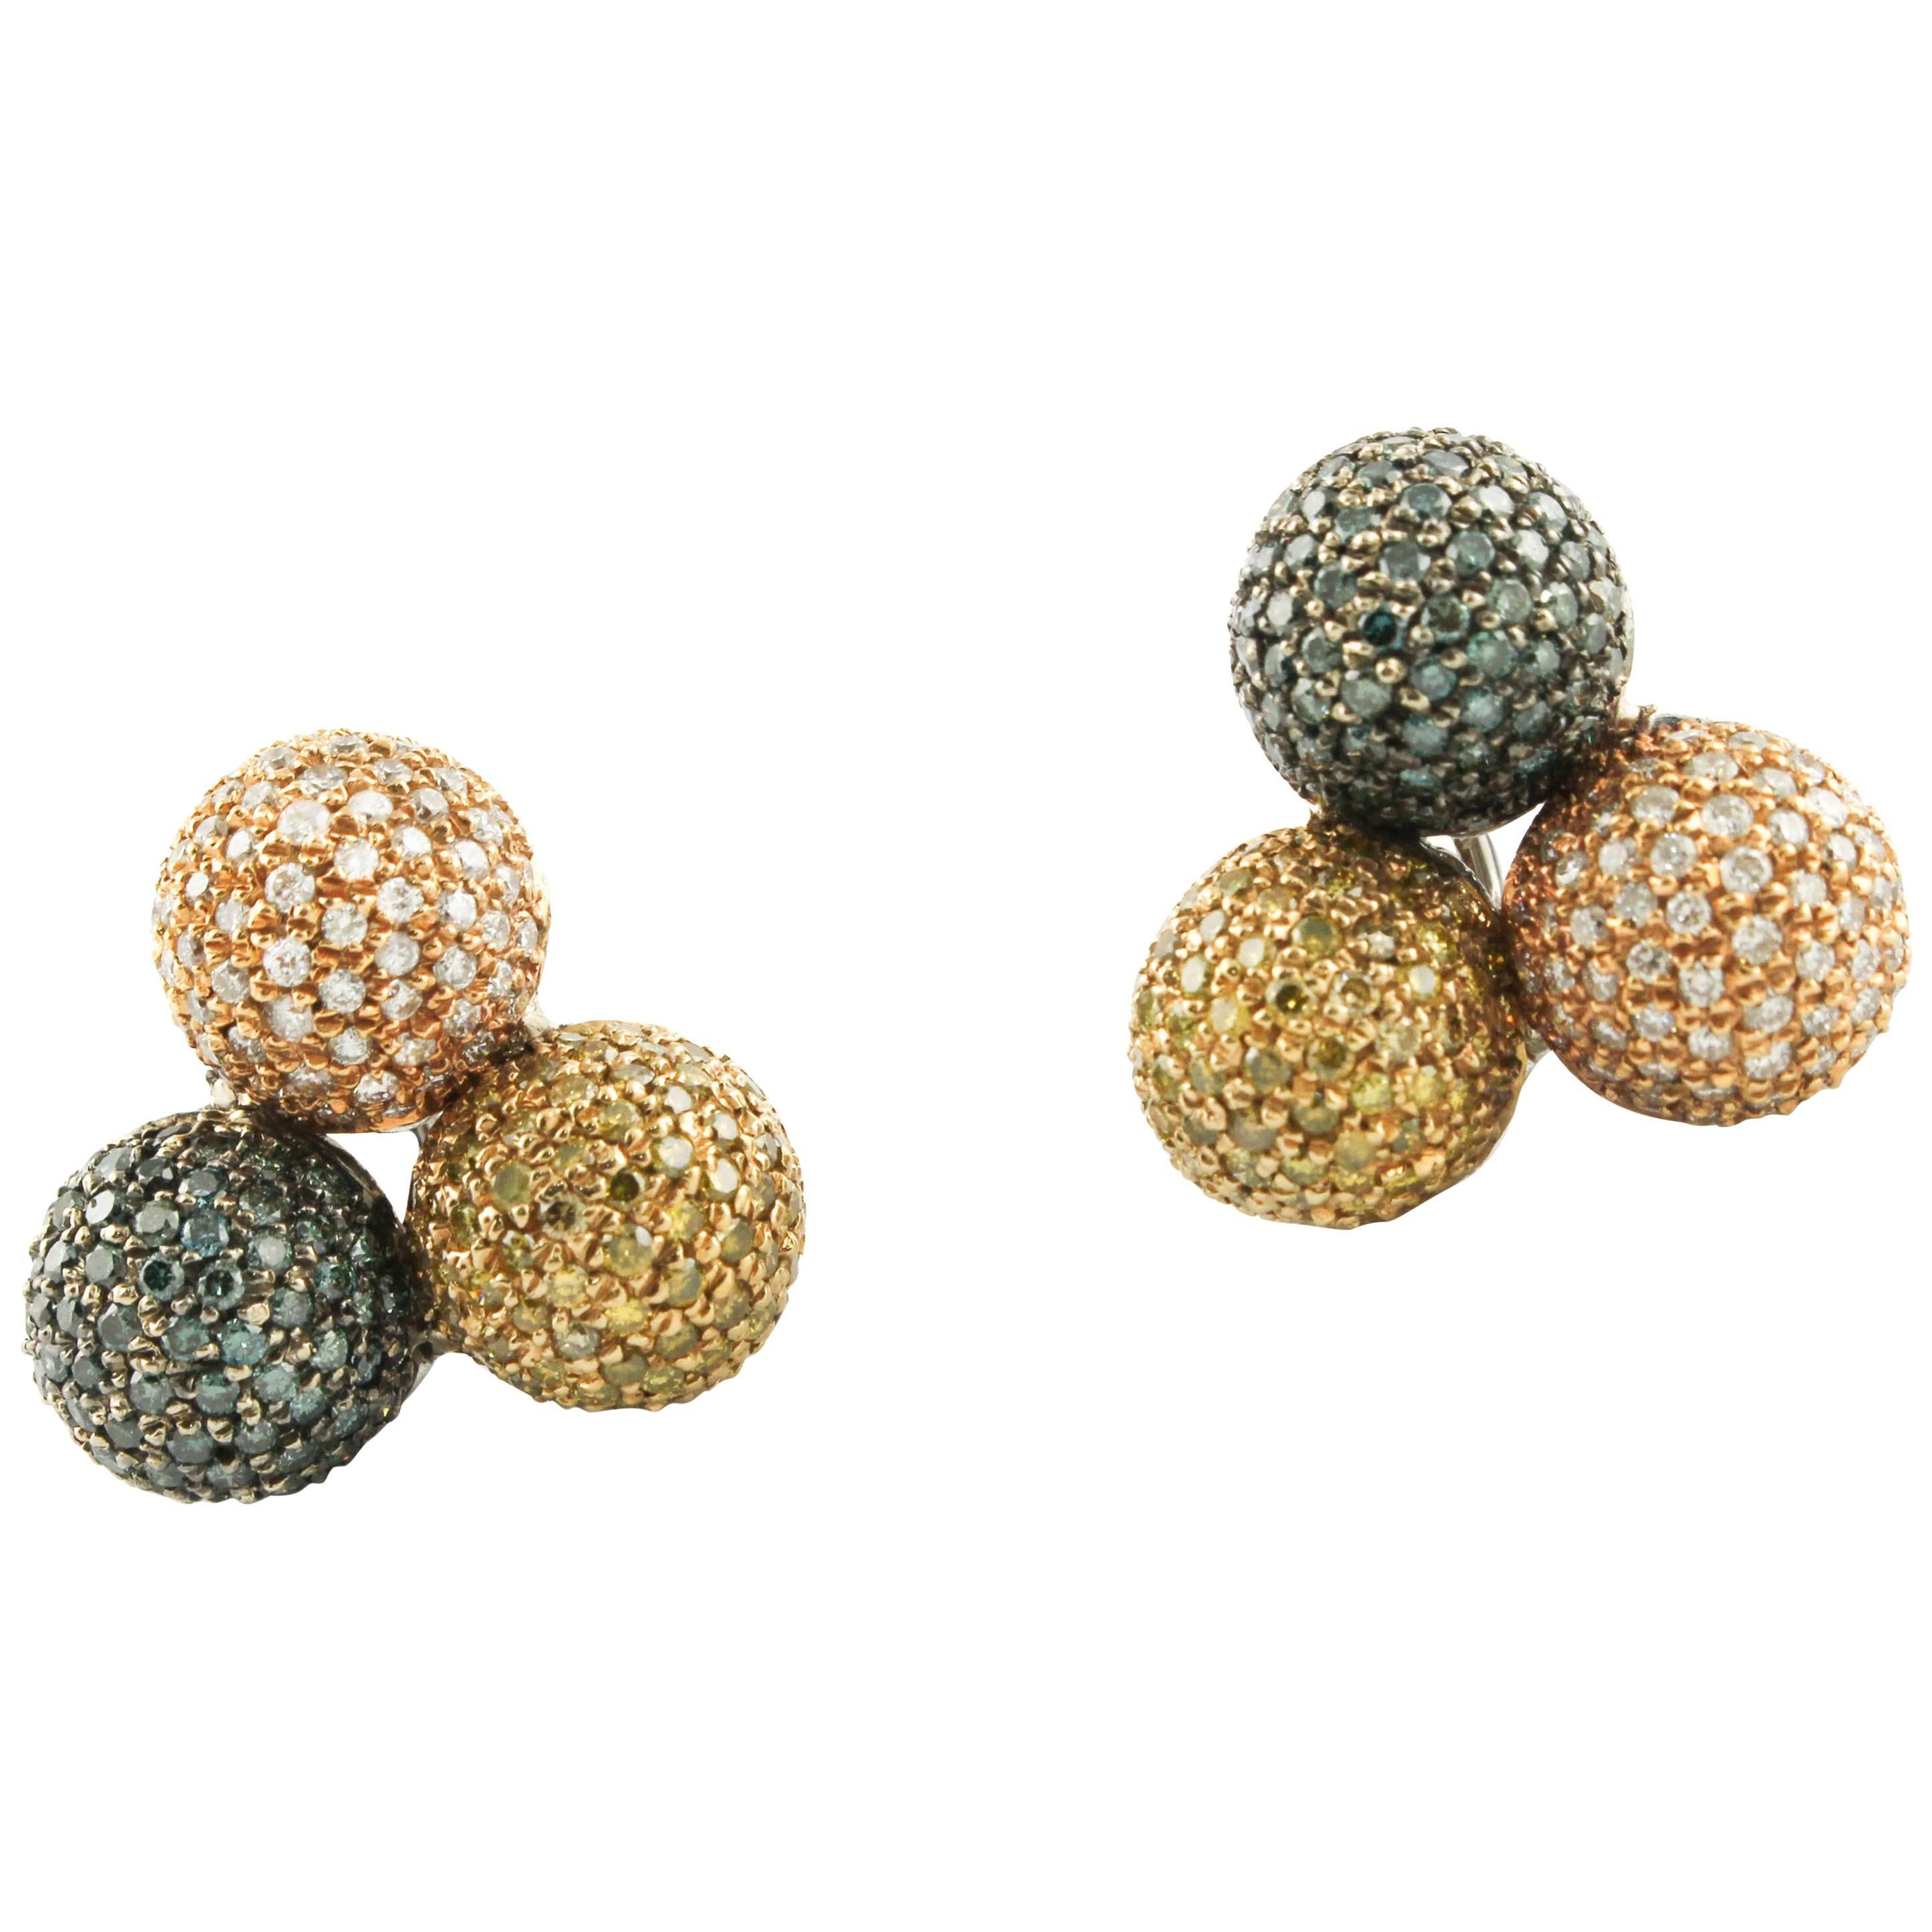  Fancy Diamond, 18 kt  Rose Gold Spheres Earrings